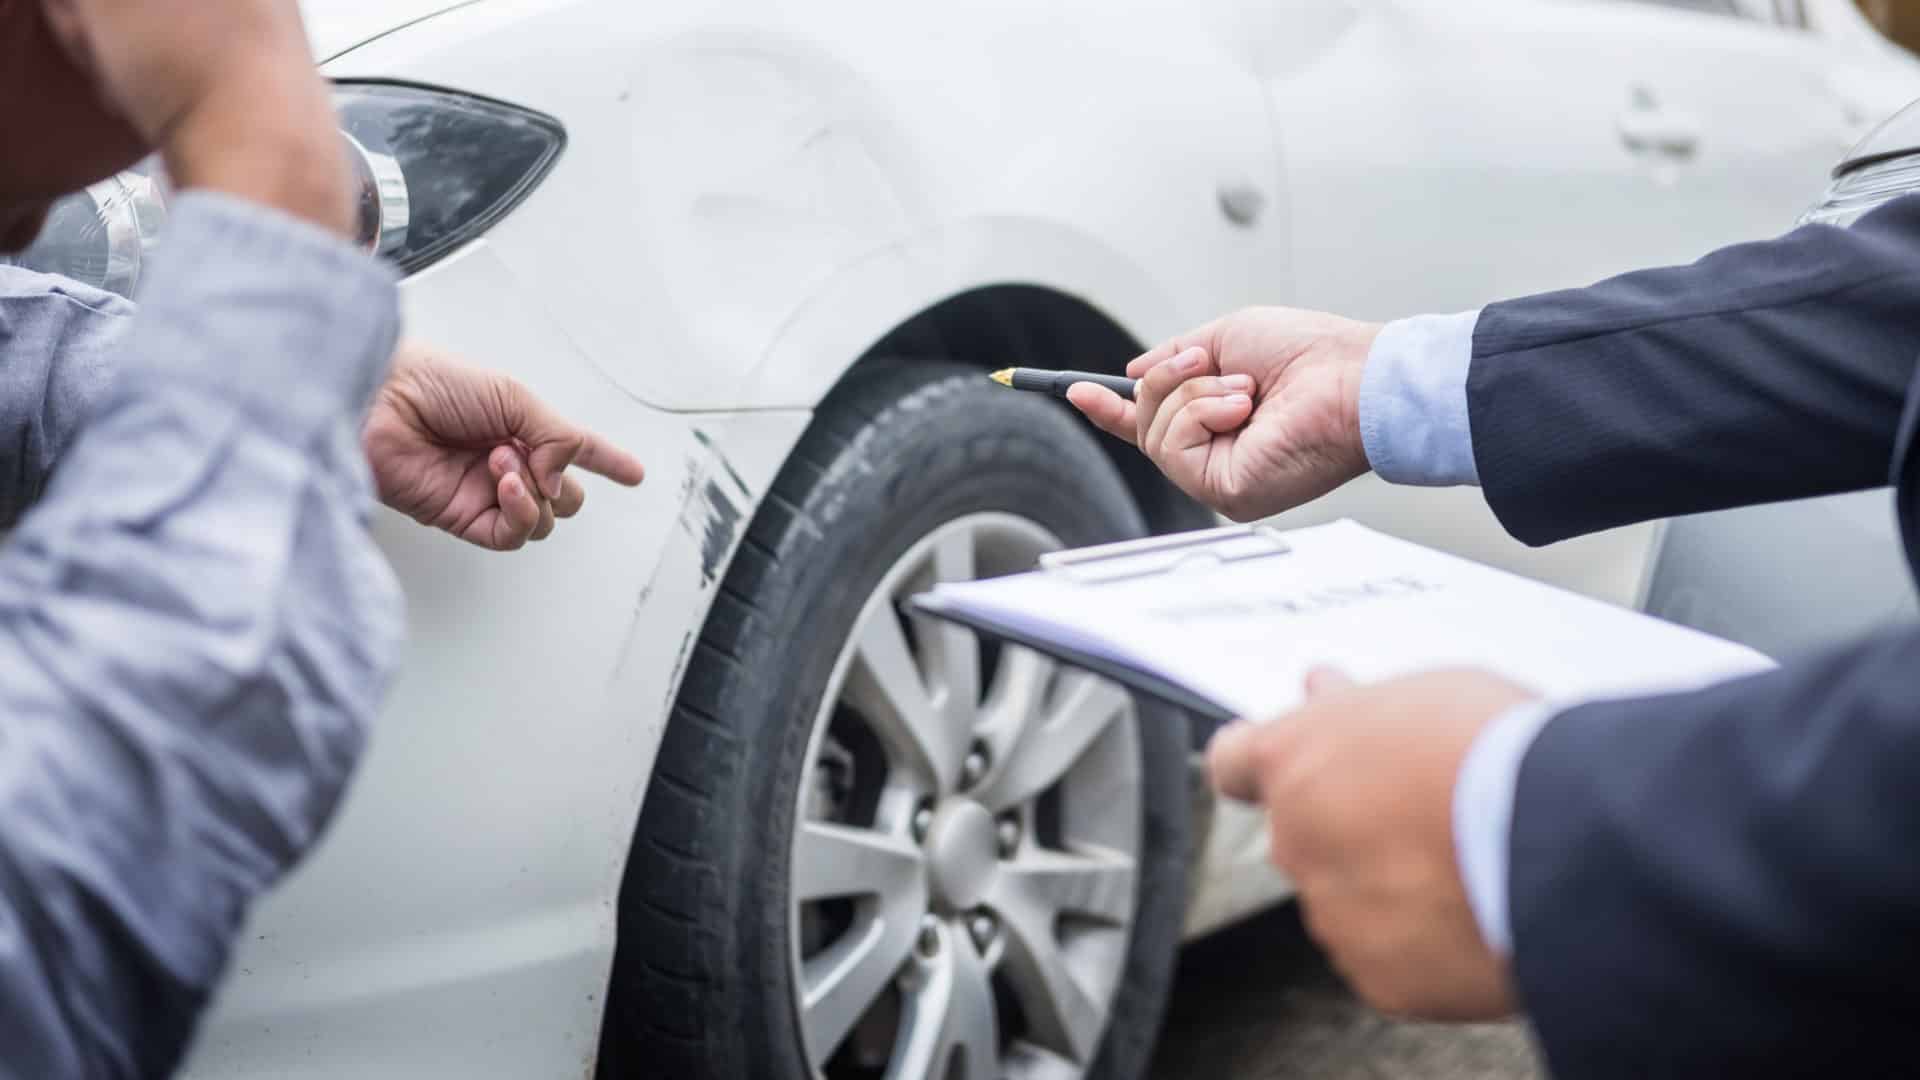 car insurance adjuster looking at damaged car